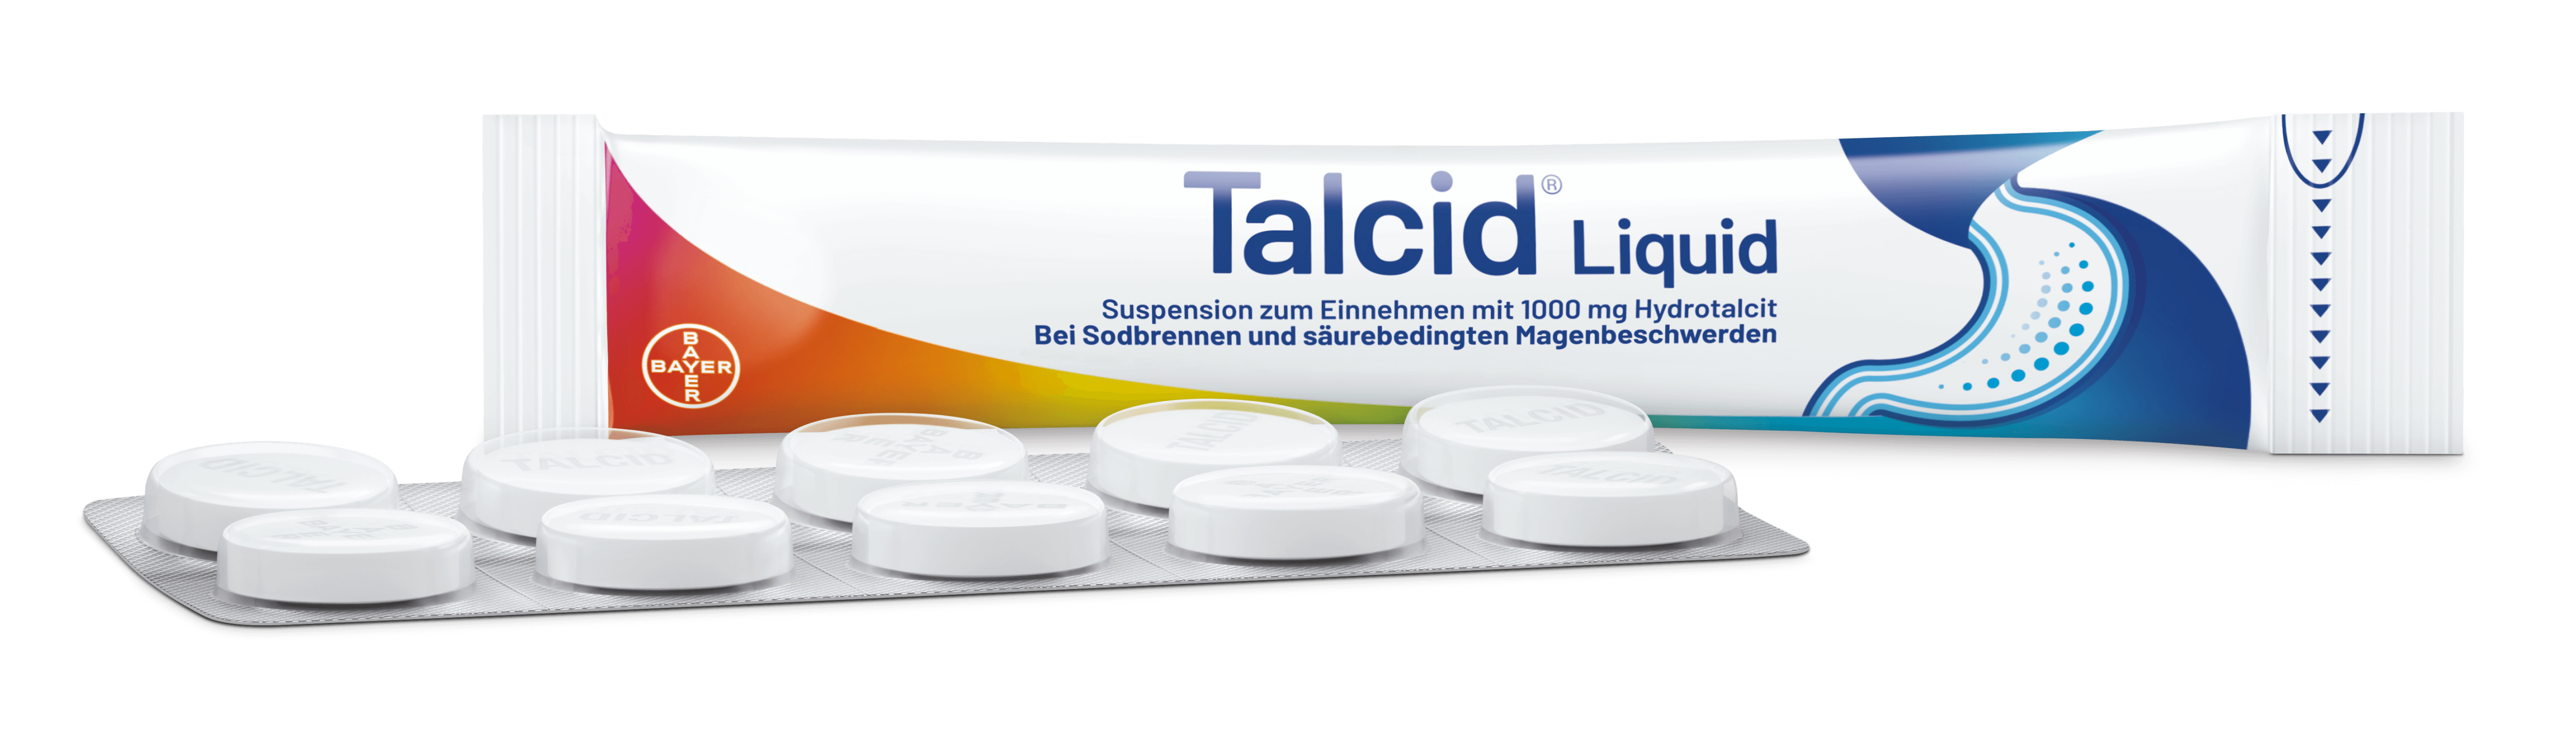 Talcid Produkte für Bayer Advertorial